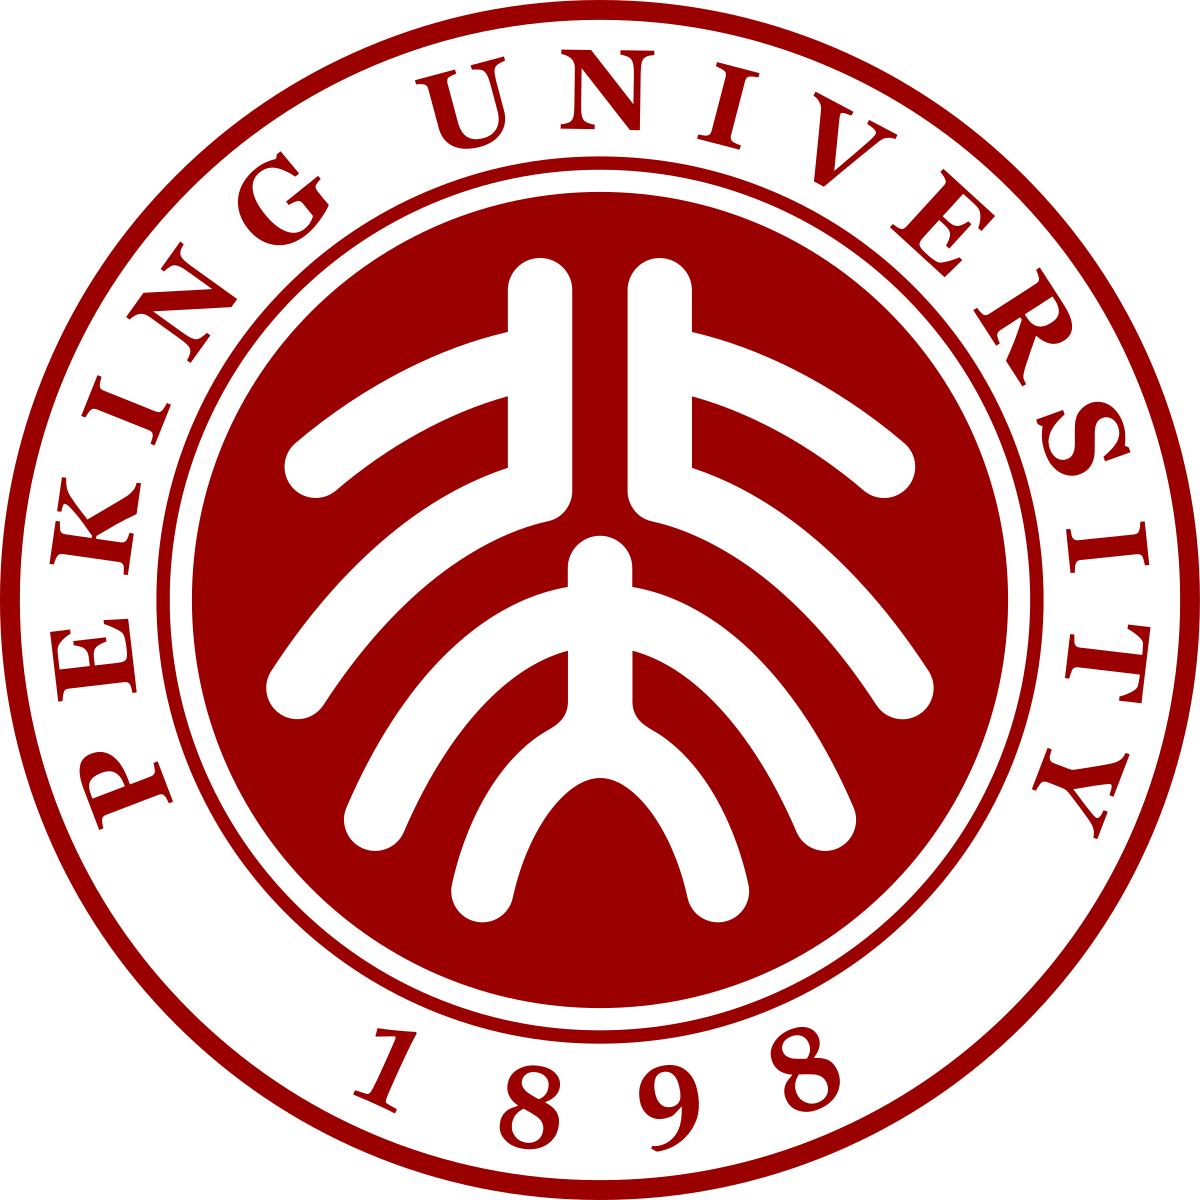 Peking University - Wikipedia